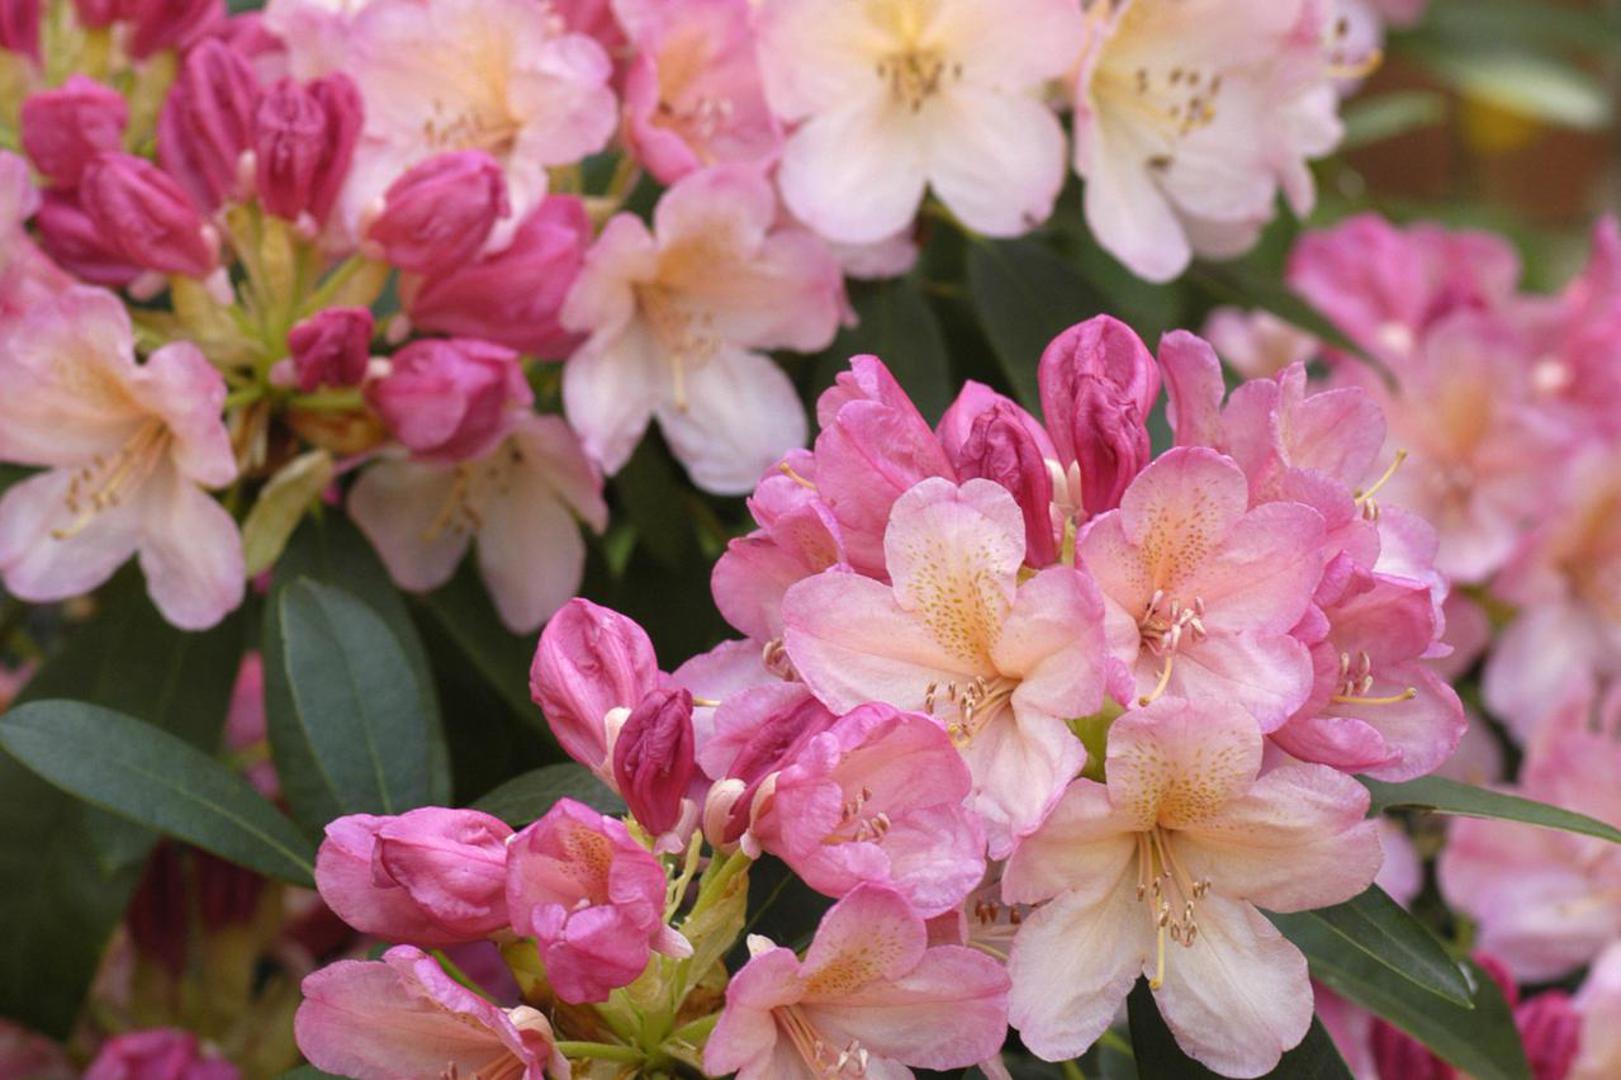 Grmovi rododendrona cvatu već od ožujka, ovisno o vrsti. Biljku uvijek treba zasaditi u kiselu zemlju. Orezujte samo grane koje narušavaju dobar izgled grma, a cvjetove orežite nakon sadnje